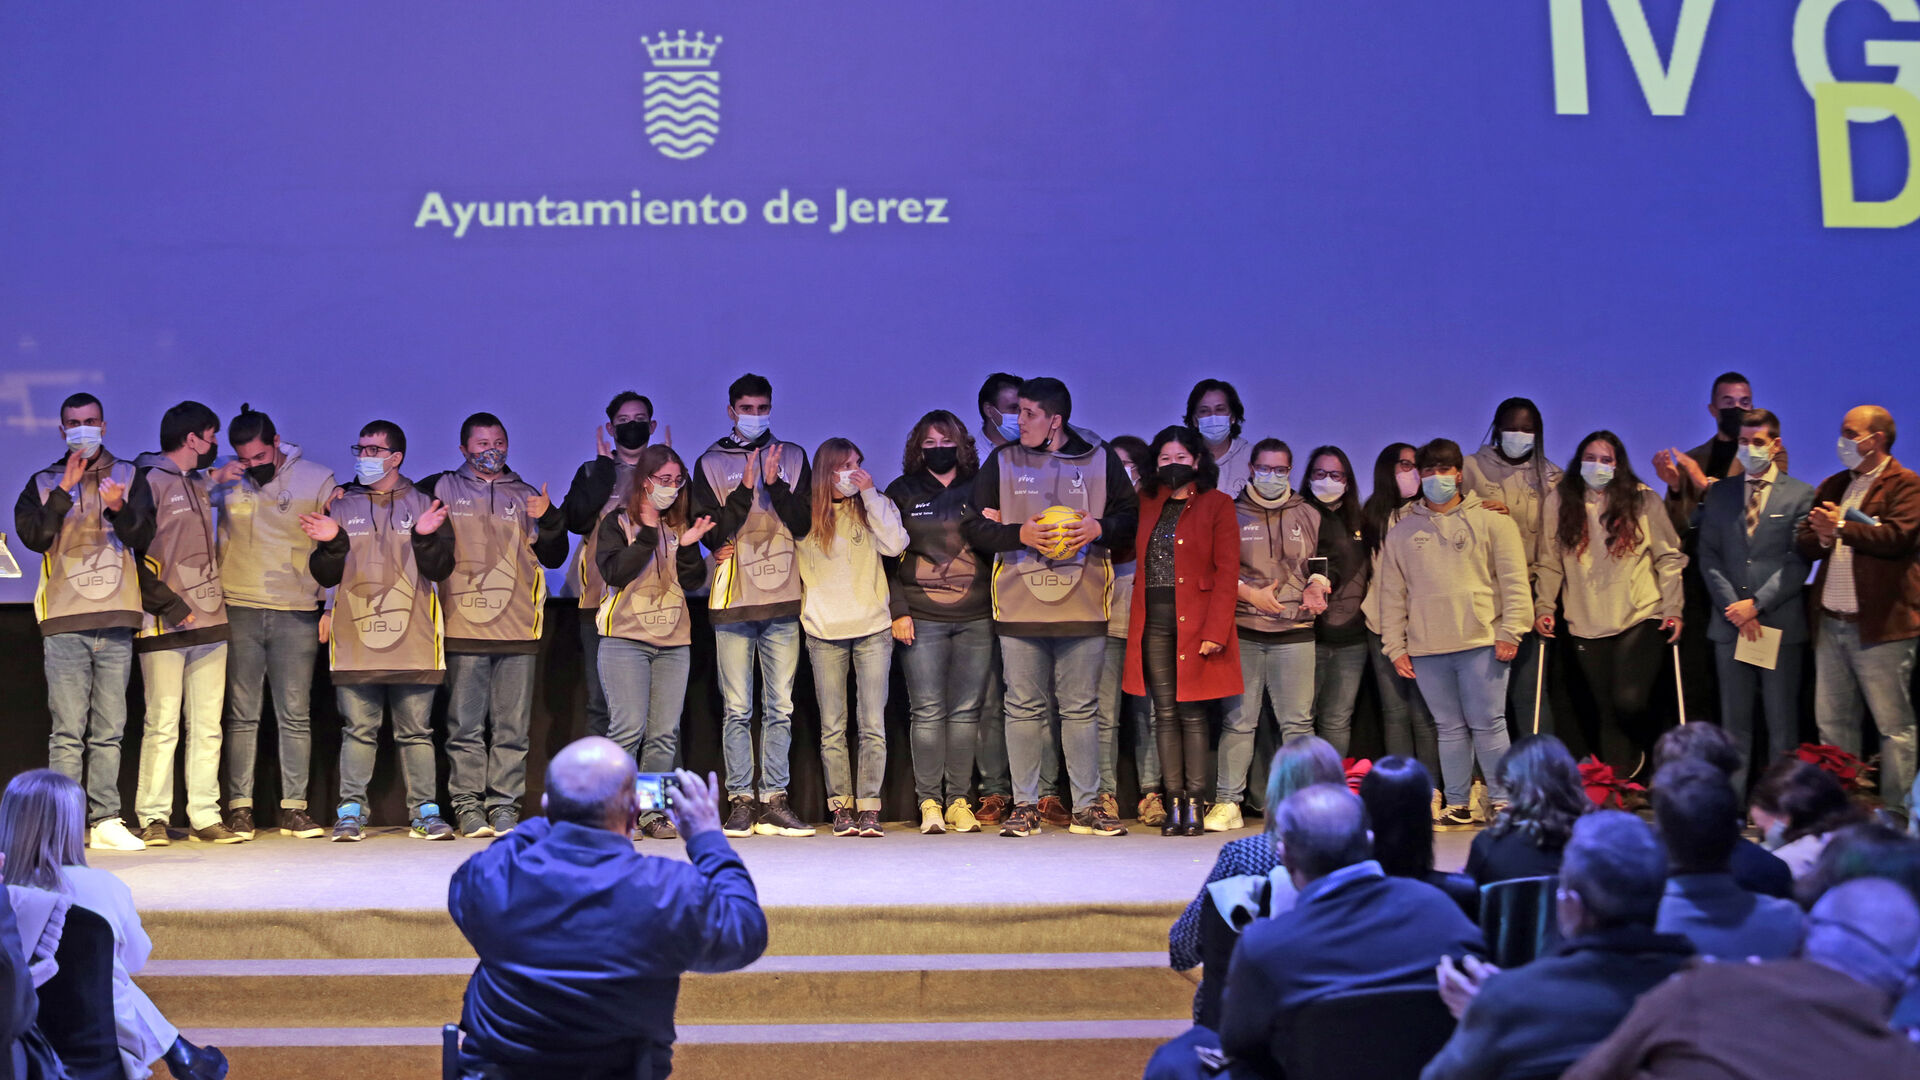 El equipo de baloncesto de discapacidad intelectual del DKV Jerez subi&oacute; al escenario para recoger el premio a los Valores Humanos.